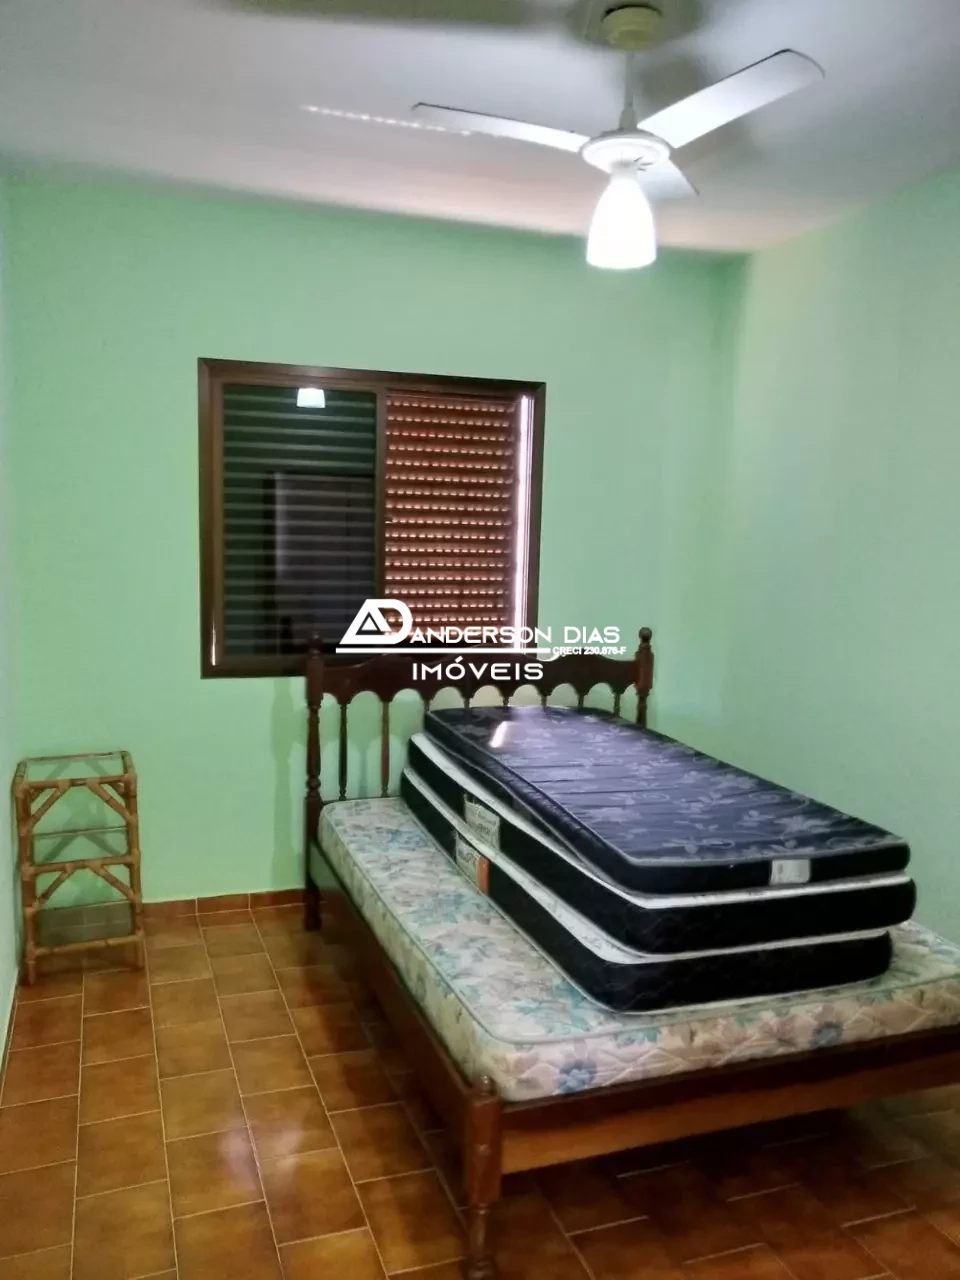 Apartamento com 2 dormitórios à venda, 62 m² por R$ 350.000 - Martim de Sá - Caraguatatuba/SP